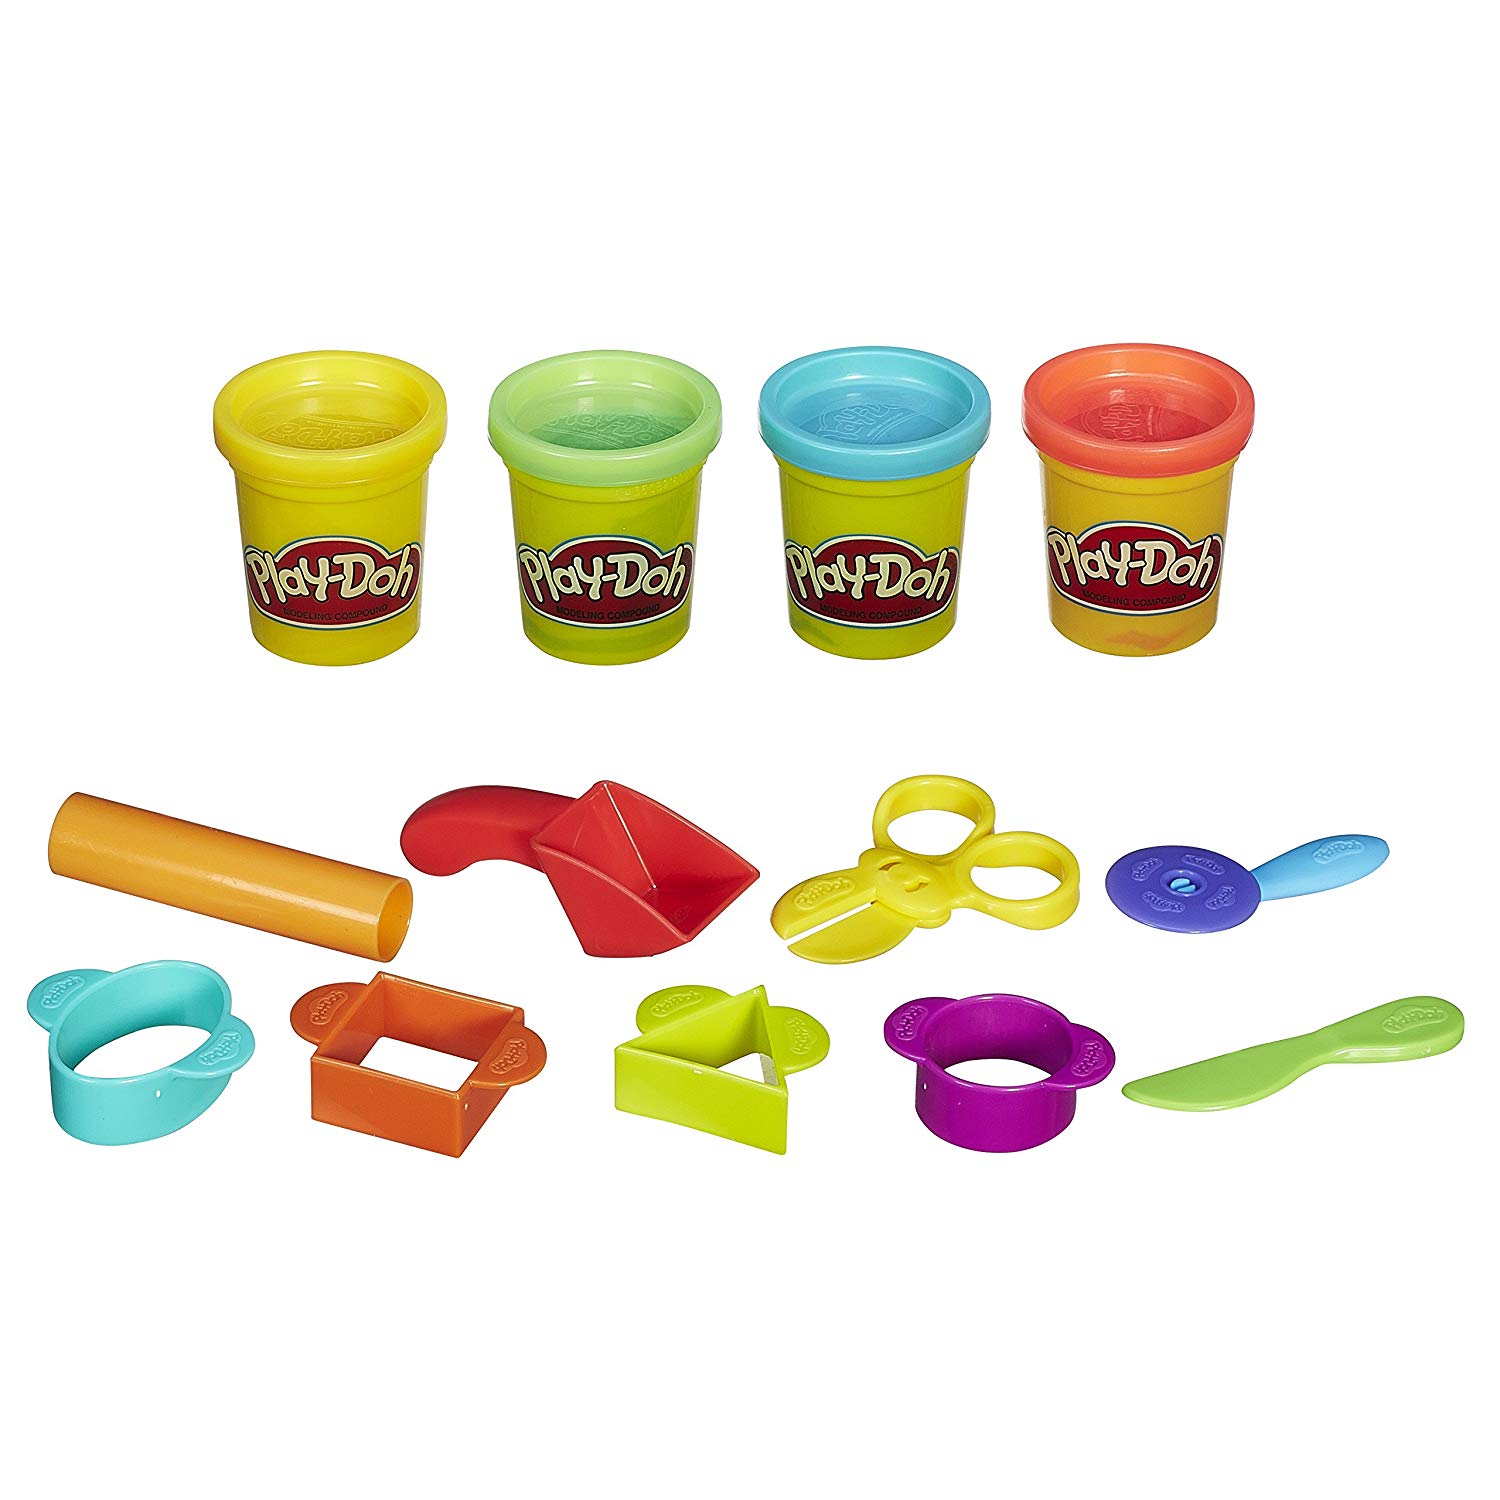 Пластилин для детей от года. Playdo пластилин набор. Пластилин Хасбро. Play-Doh Hasbro набор базовый. Пластилин "Play-Doh зубной врач".